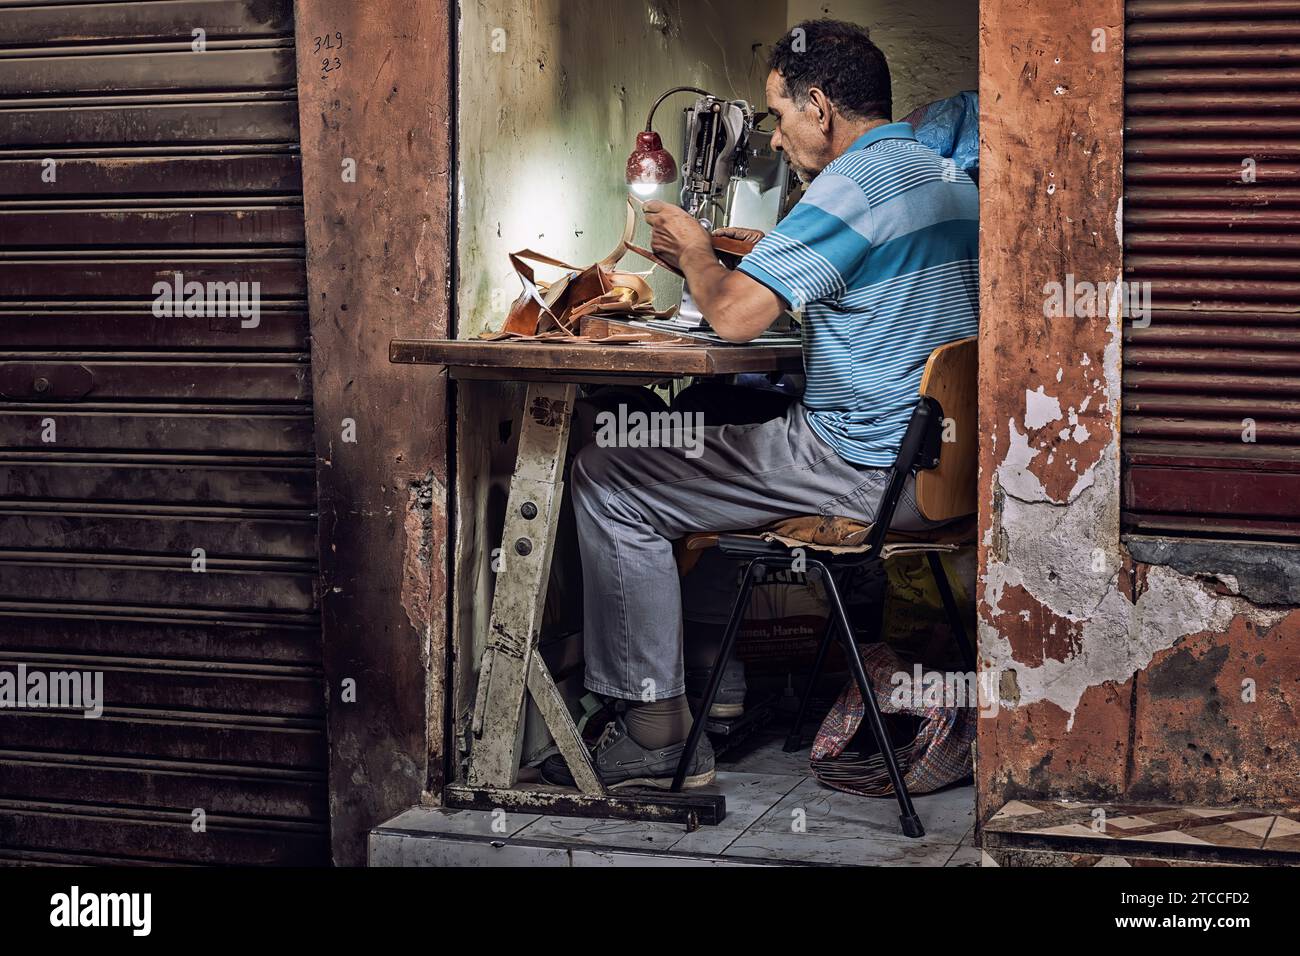 Marrakesch, Marokko: Lederhandwerker, der in einer kleinen Werkstatt im Souk der Marrakesch Medina arbeitet. Sehr kleiner Arbeitsplatz. Stockfoto